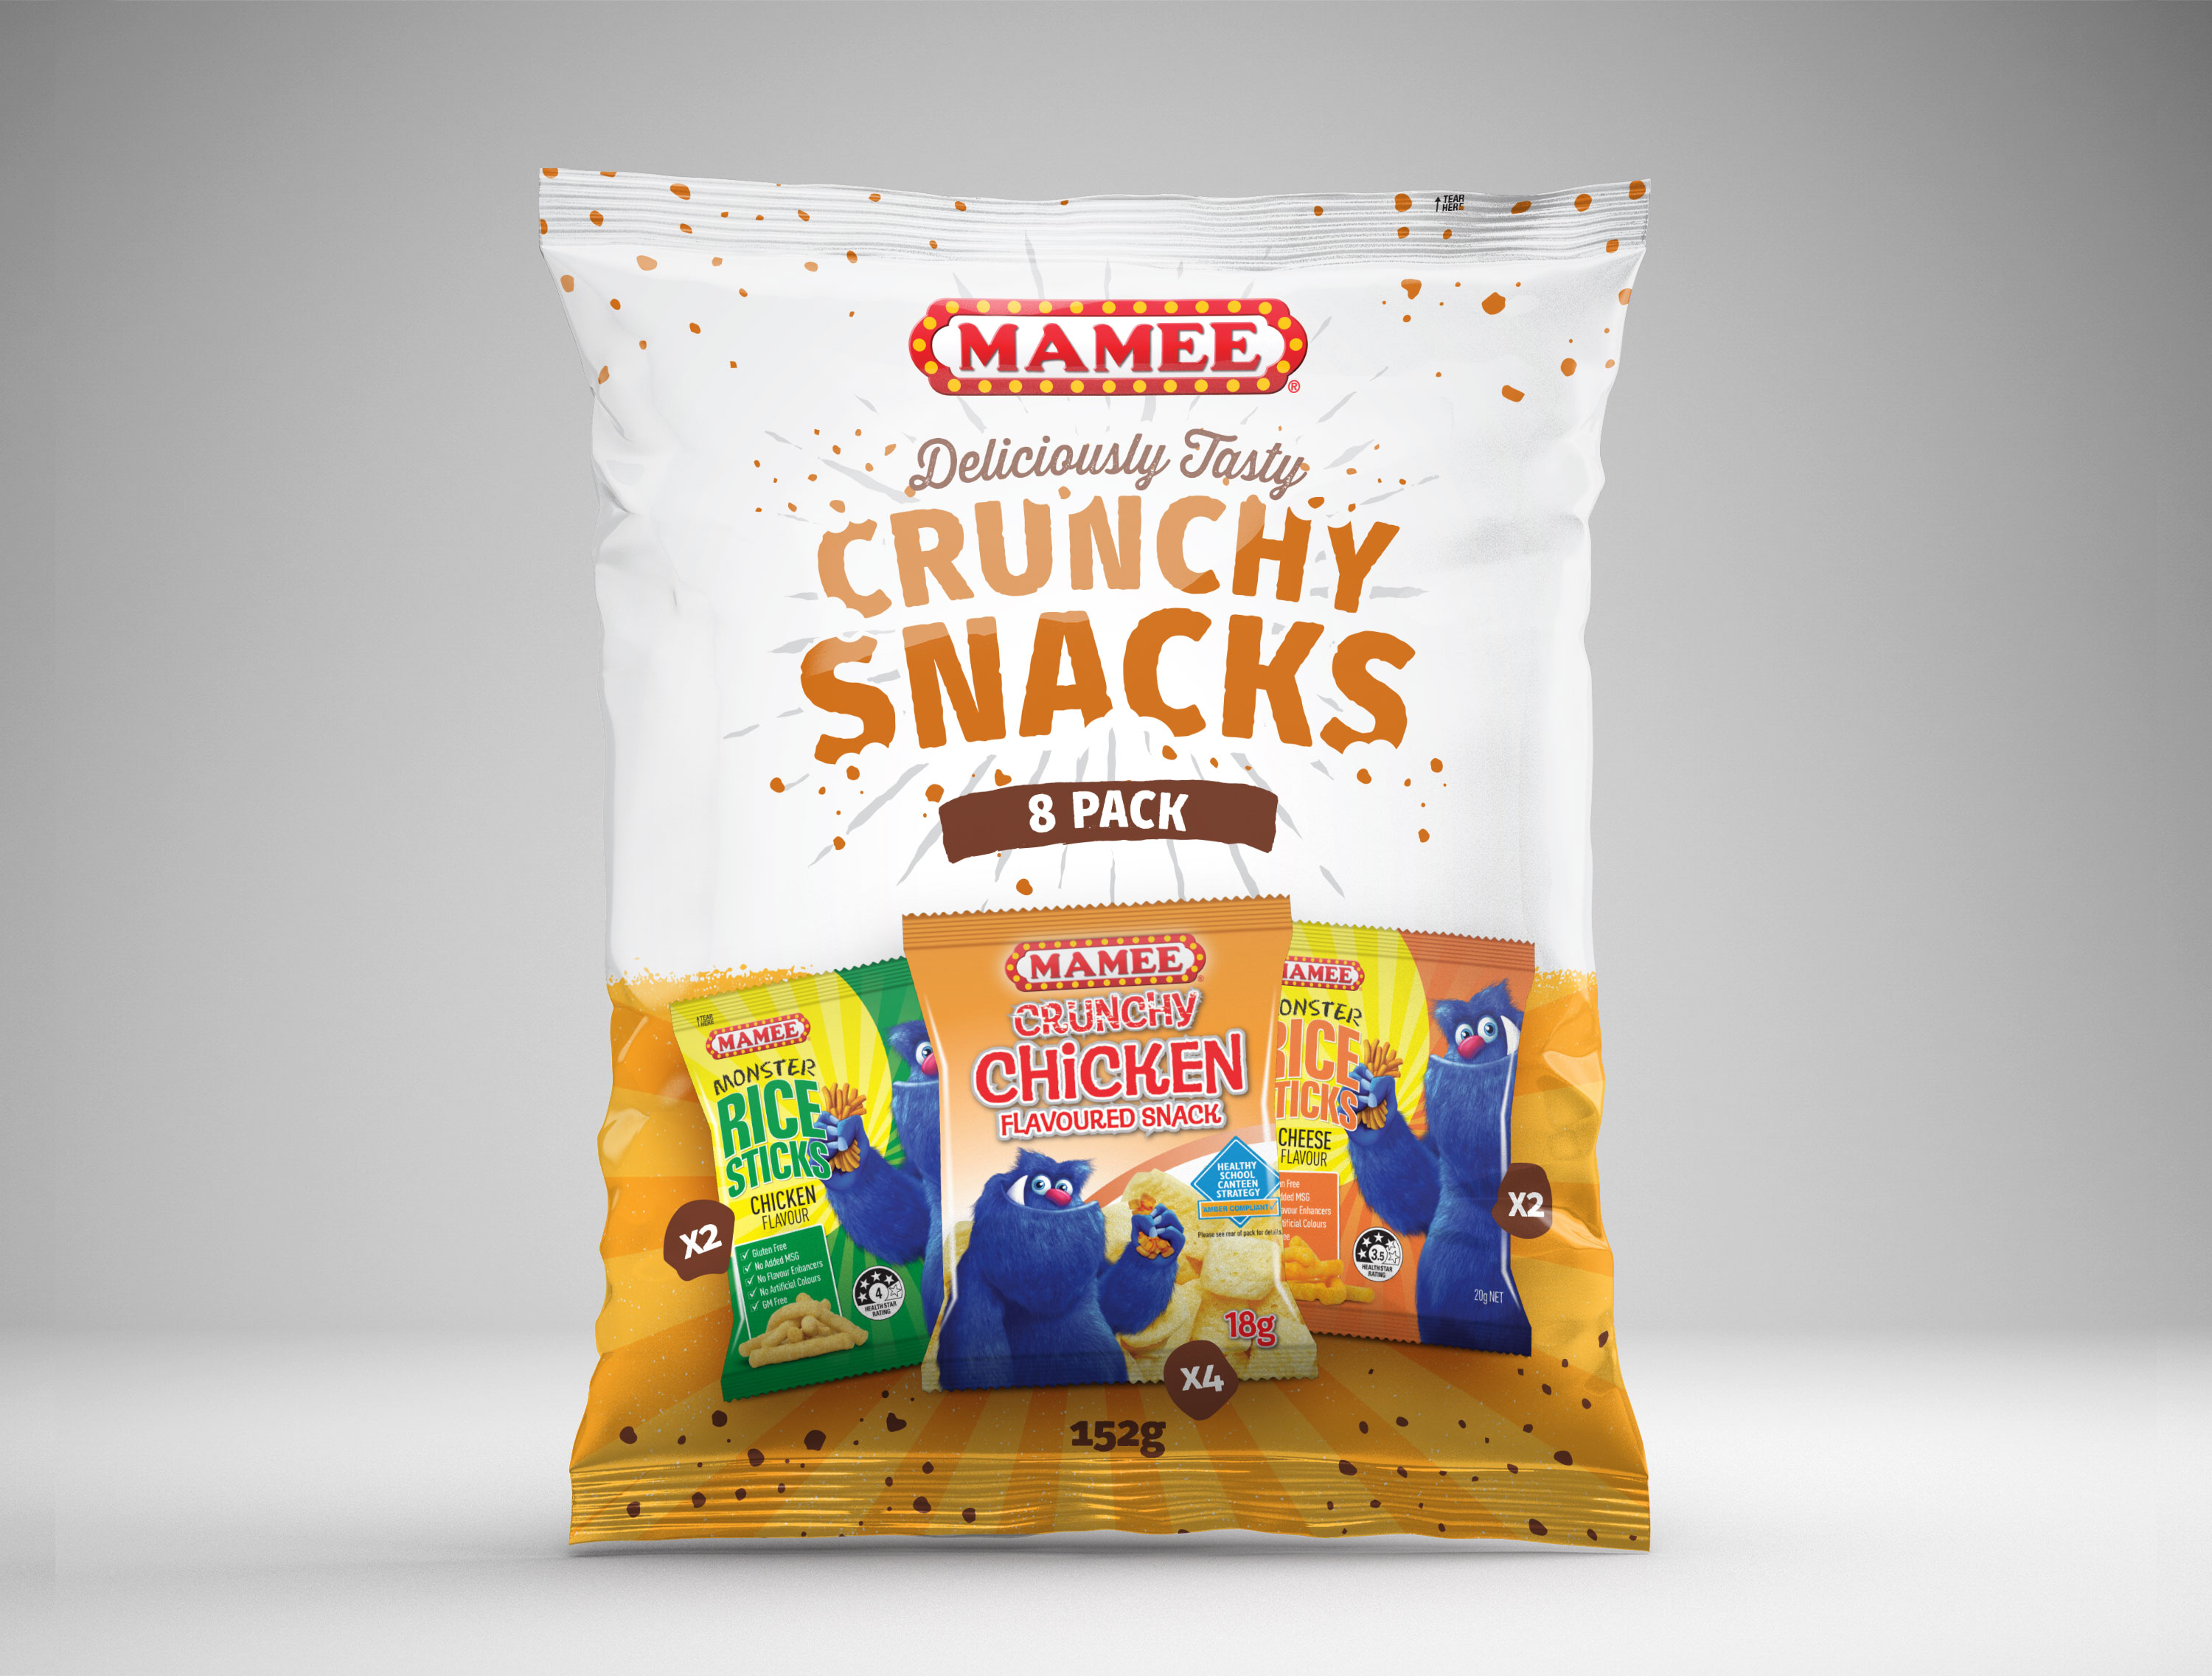 Mamee Crucnhy Snacks Packaging Design